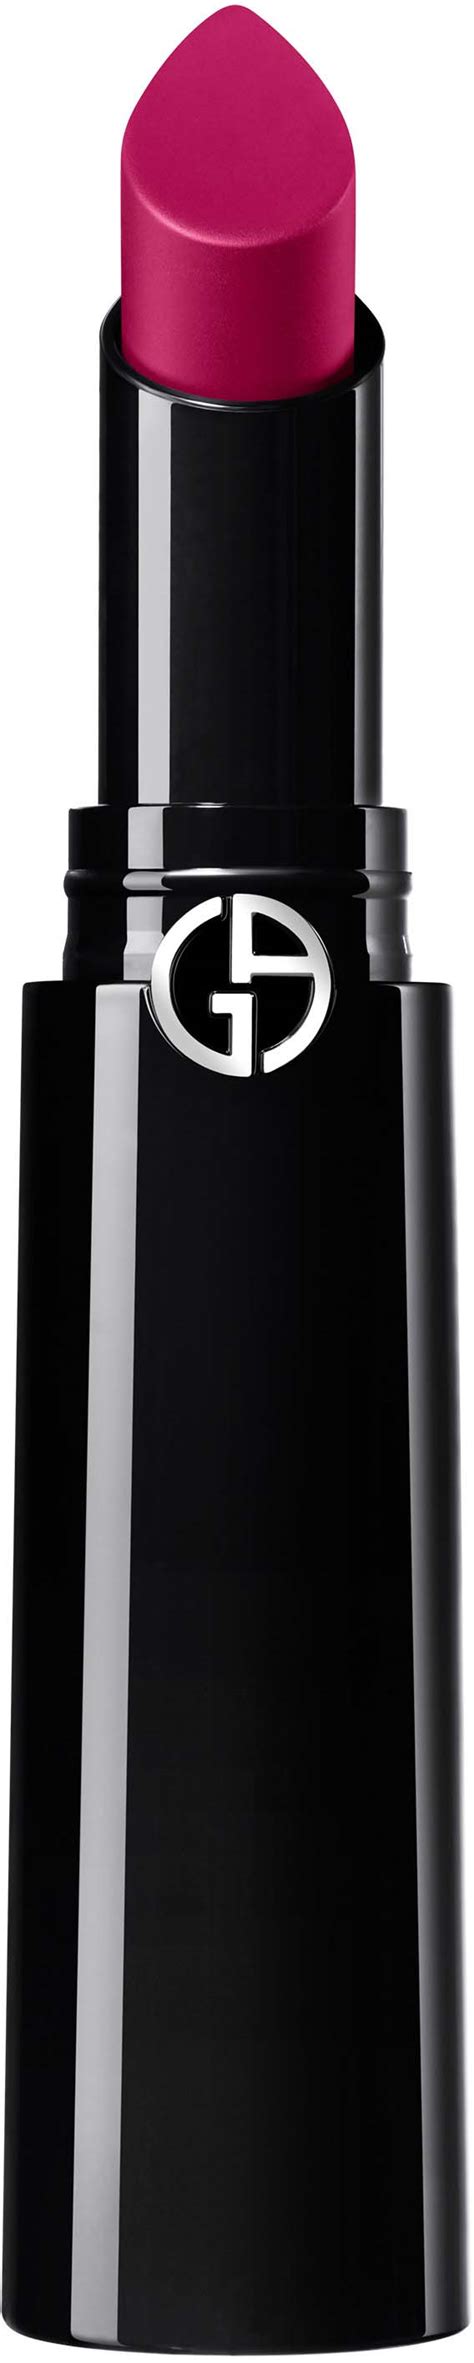 Giorgio Armani Lip Power Vivid Color Long Wear Lipstick 506